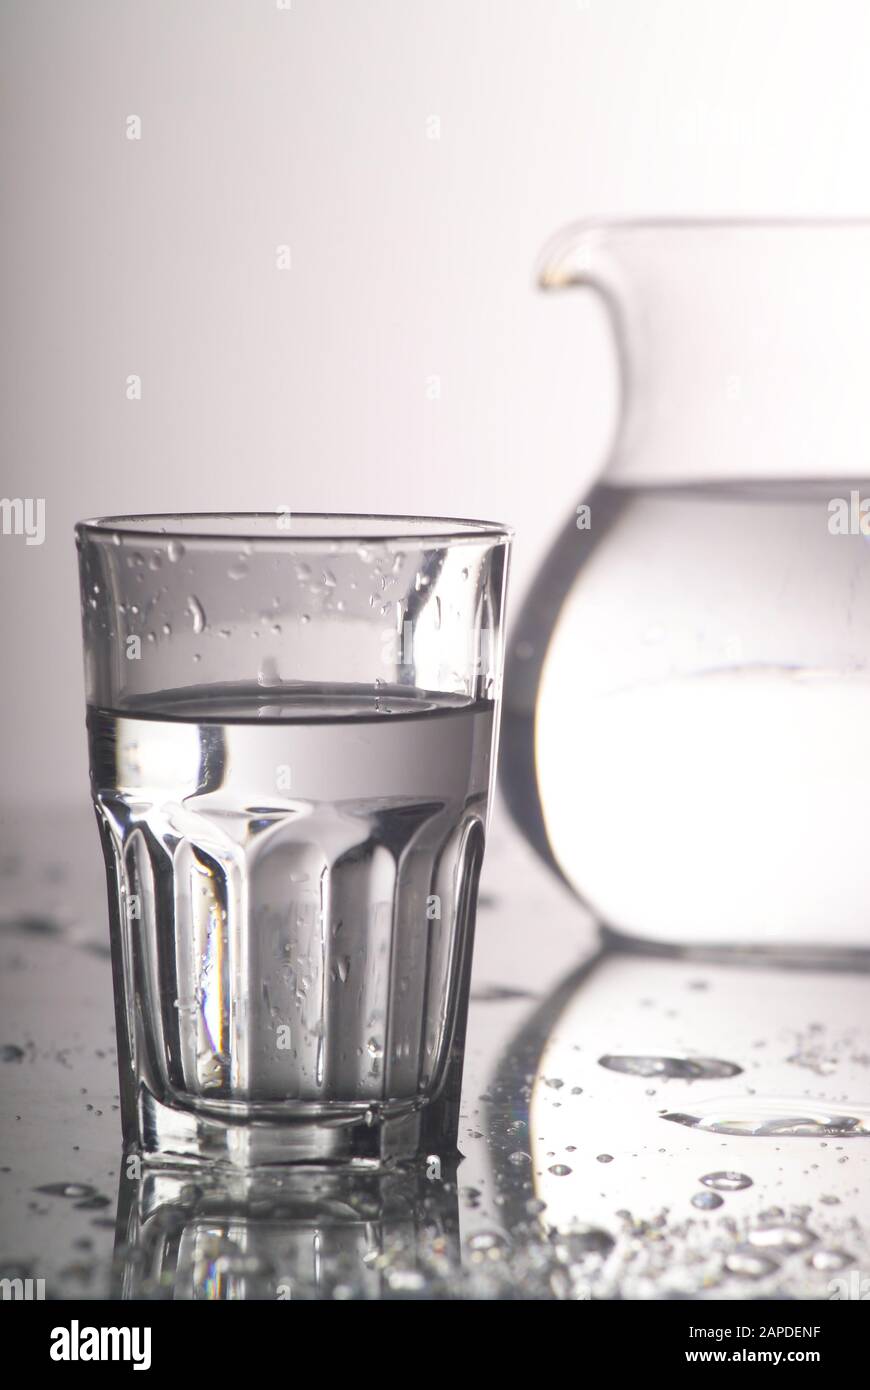 Wasser - l’eau Banque D'Images